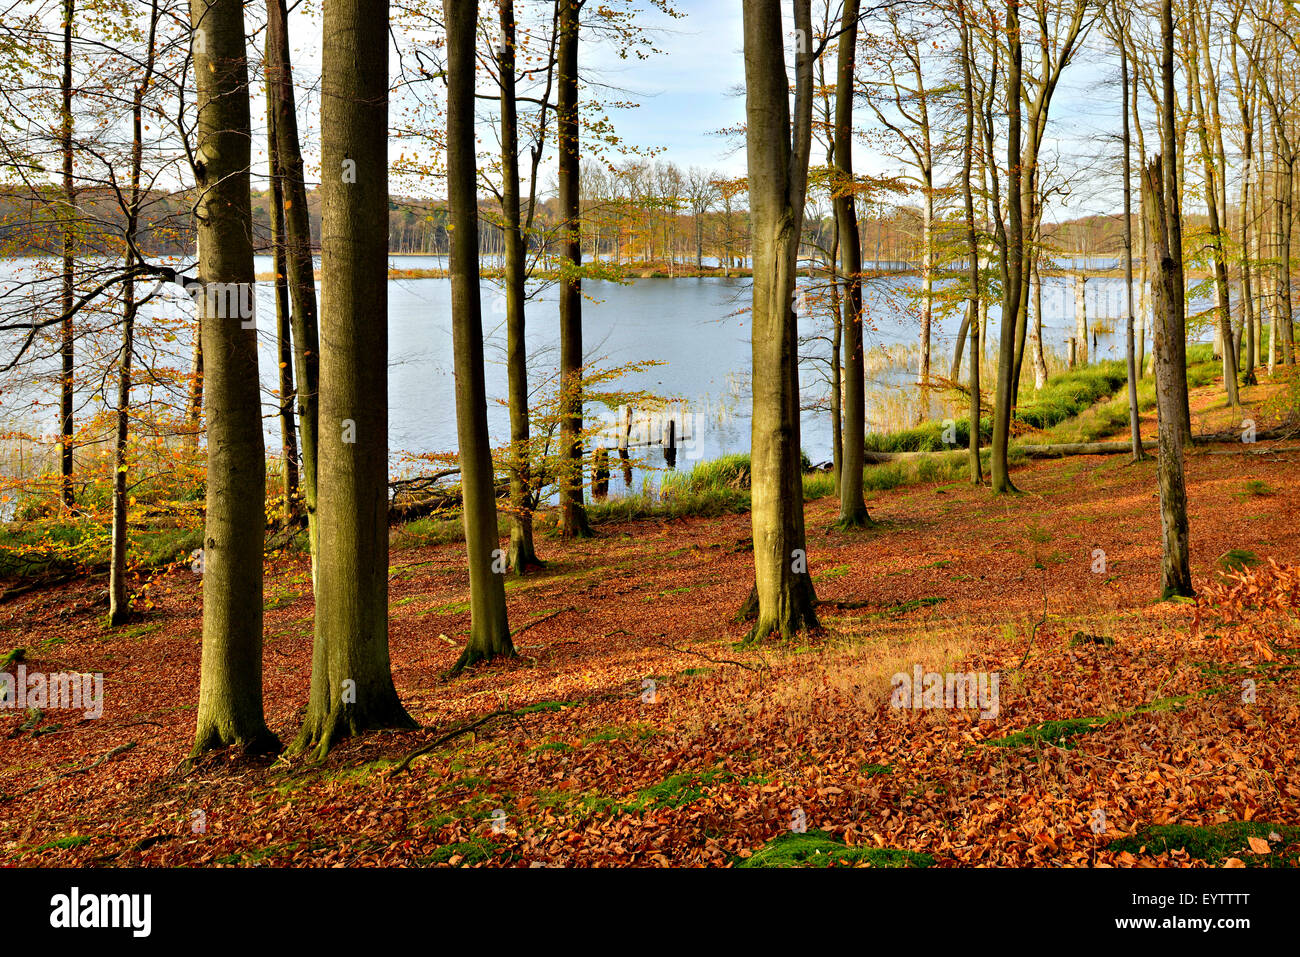 Germany, Mecklenburg-Western Pomerania, Mecklenburg-Vorpommern, Müritz National Park, branch Serrahn, autumn in the Schweingartensee (lake) Stock Photo